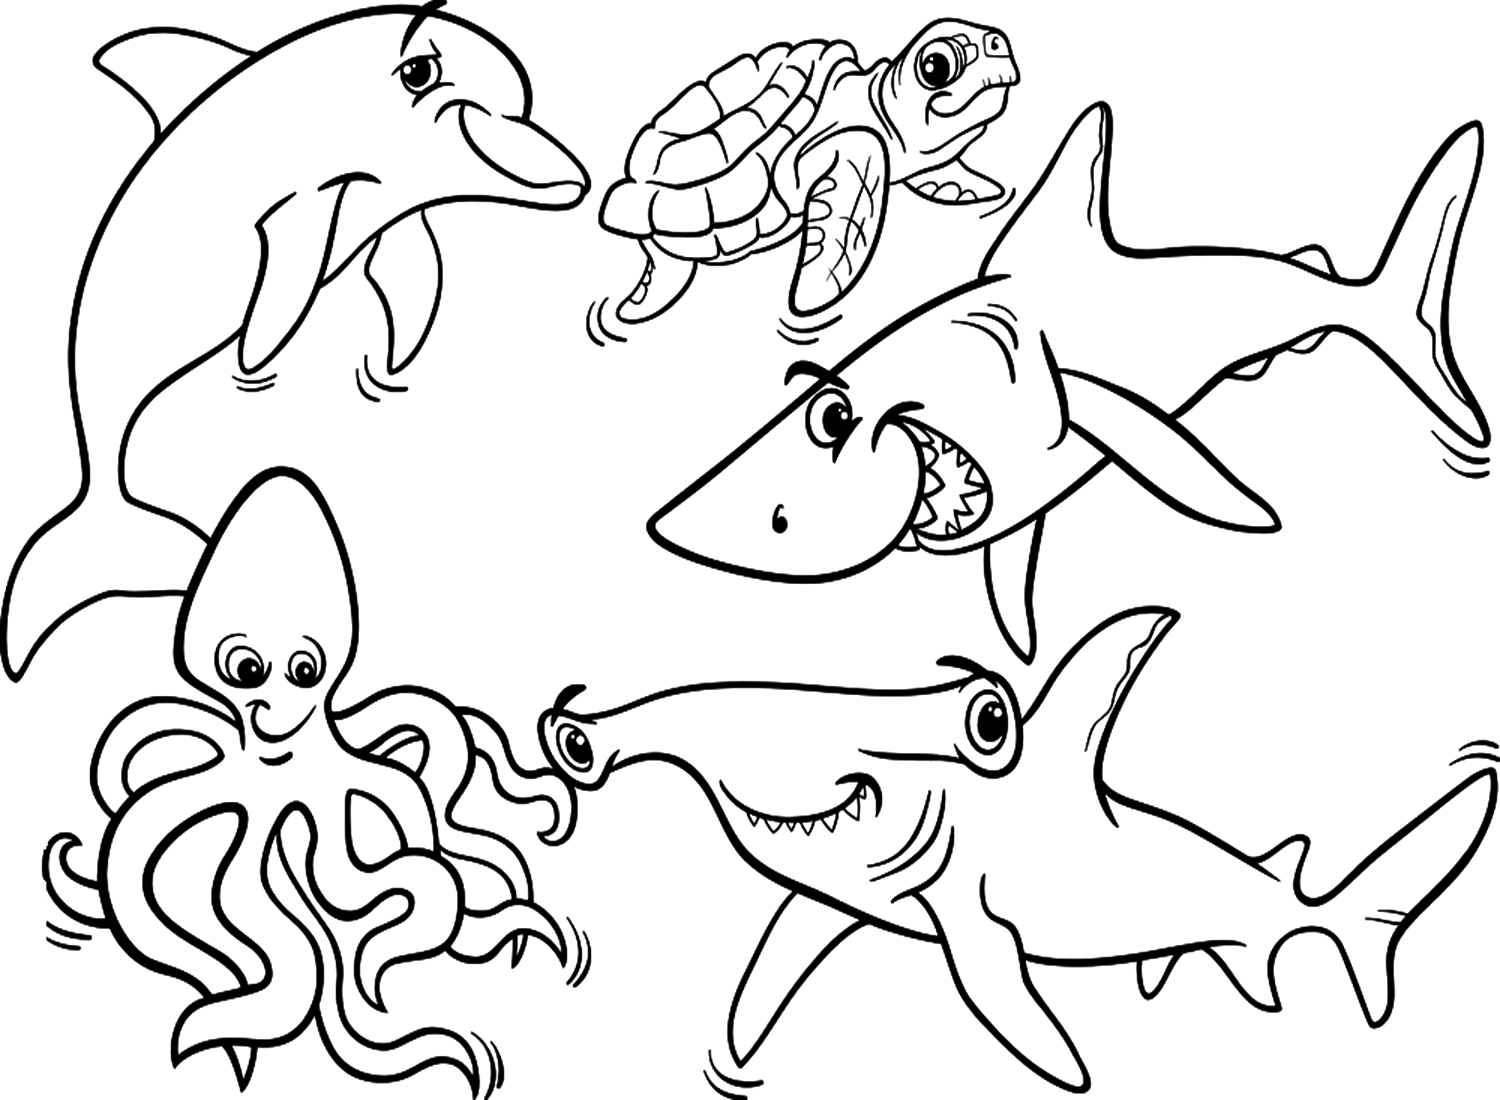 Página para colorear de pulpos y animales marinos de Octopus